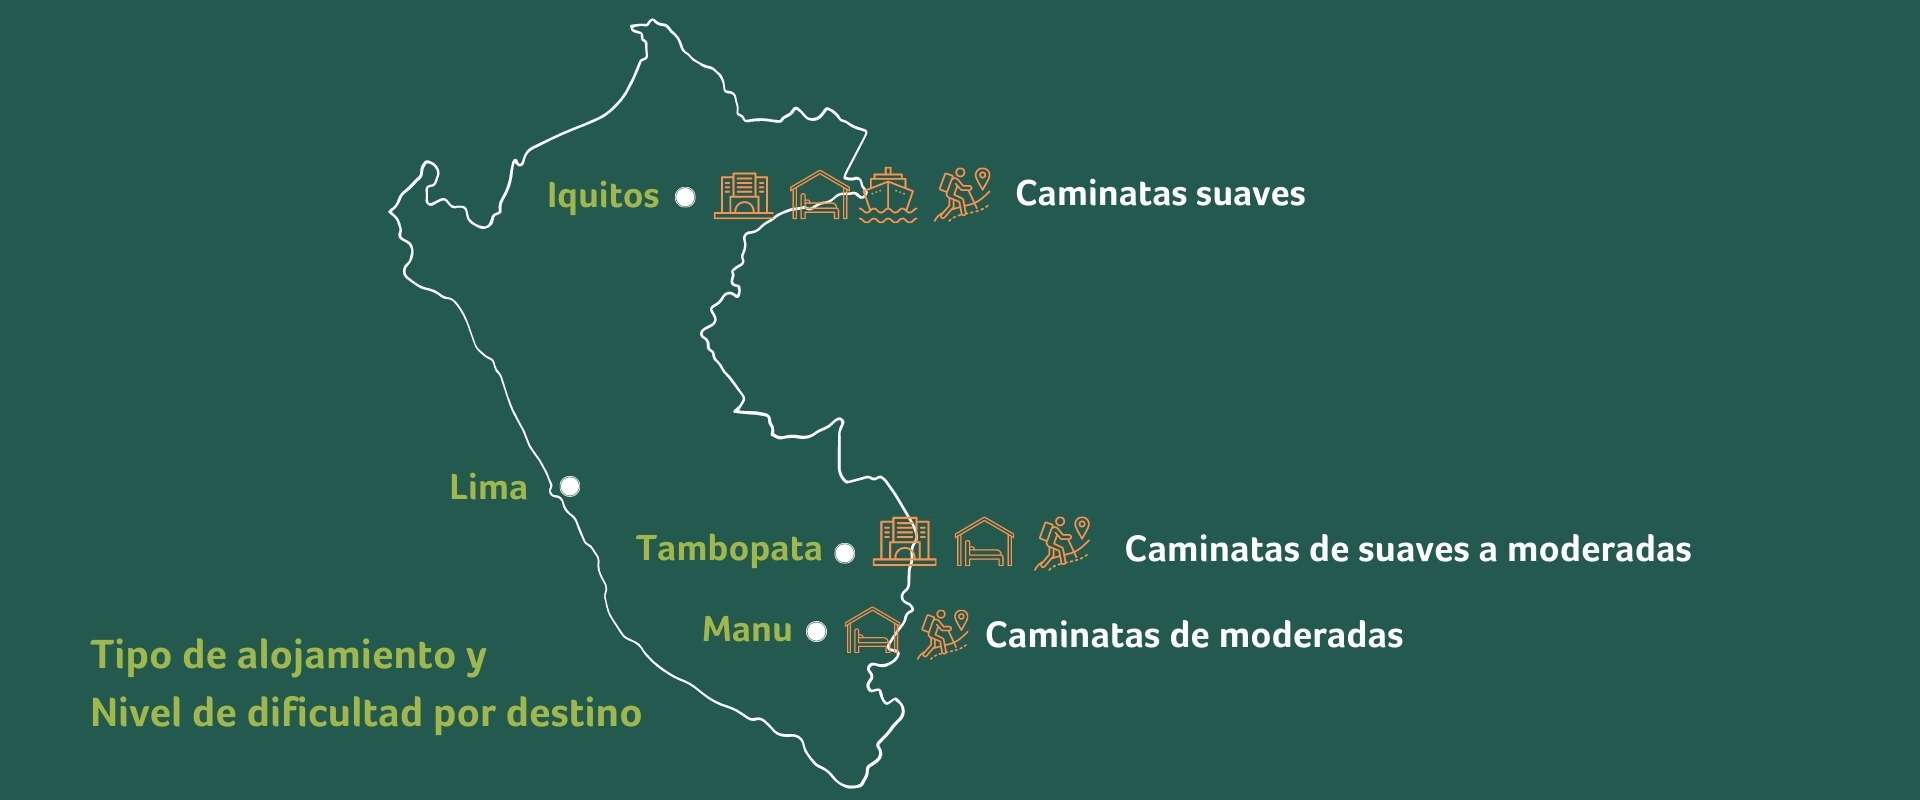 Tipo de alojamiento y nivel de dificultad en la amazonia peruana